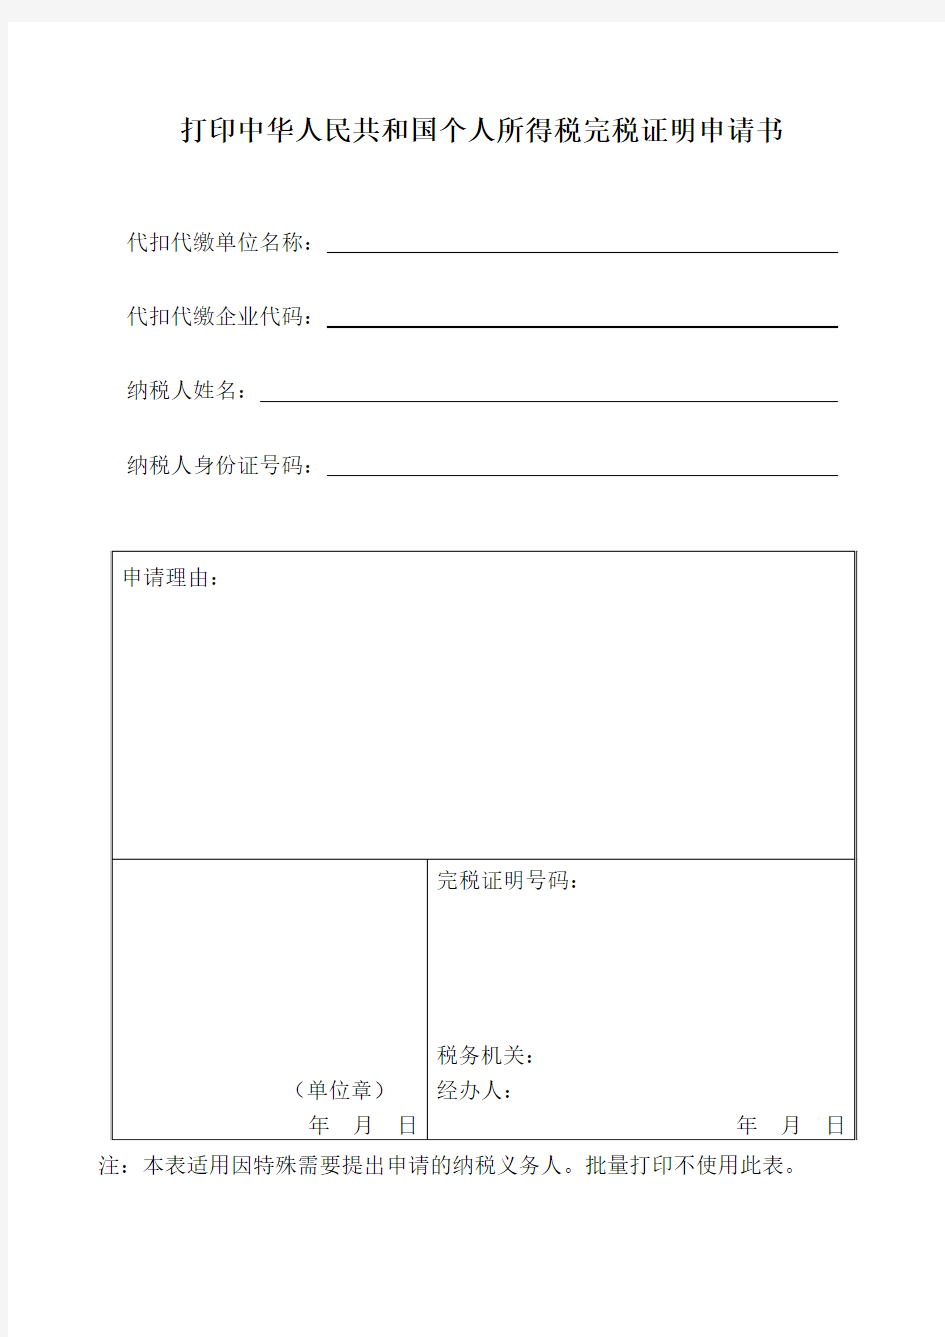 打印中华人民共和国个人所得税完税证明申请书